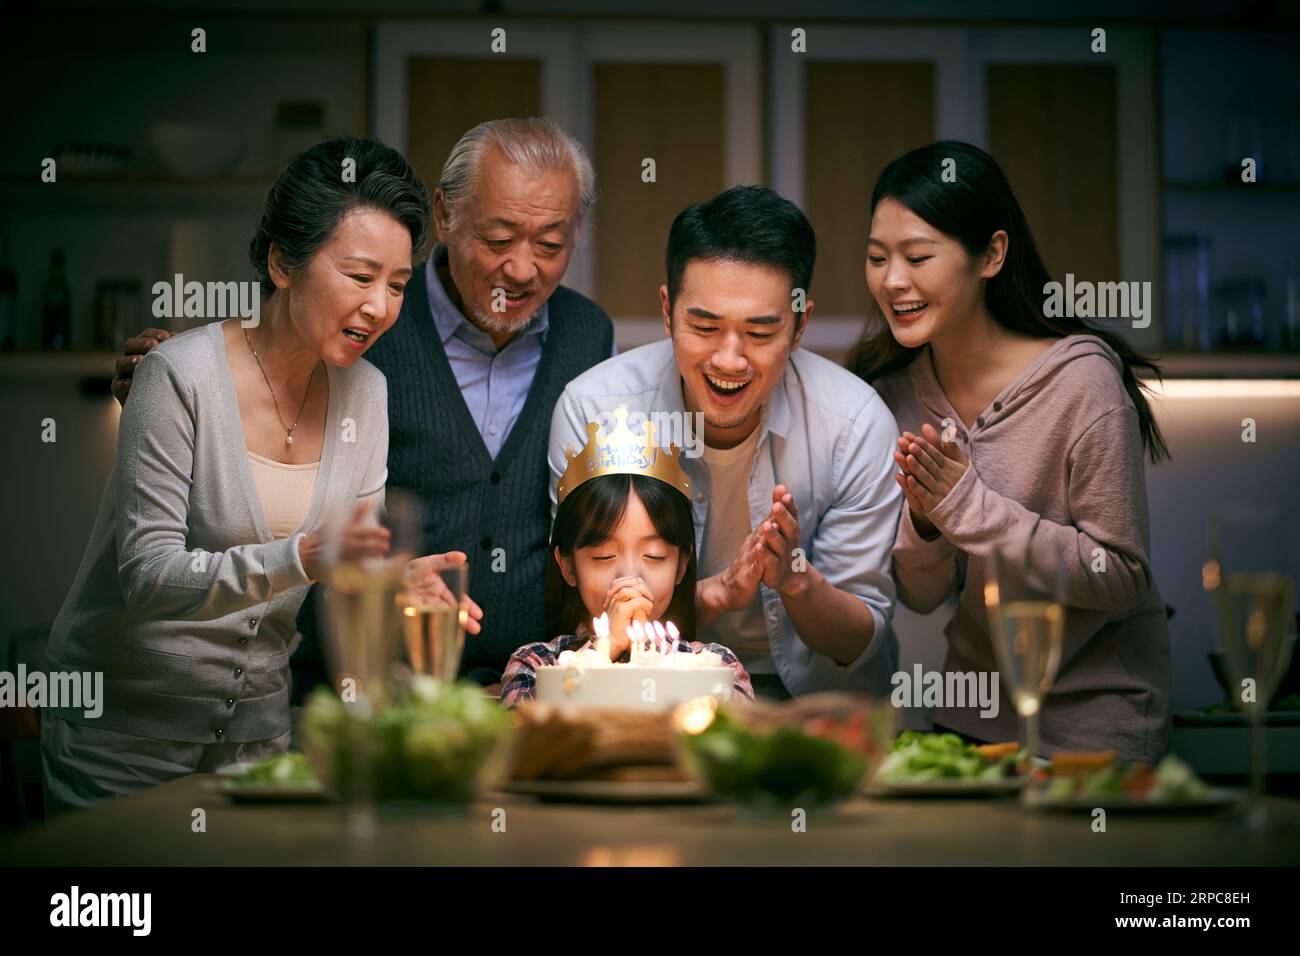 petite fille asiatique faisant un vœu alors que la famille de trois générations fête son anniversaire à la maison Banque D'Images